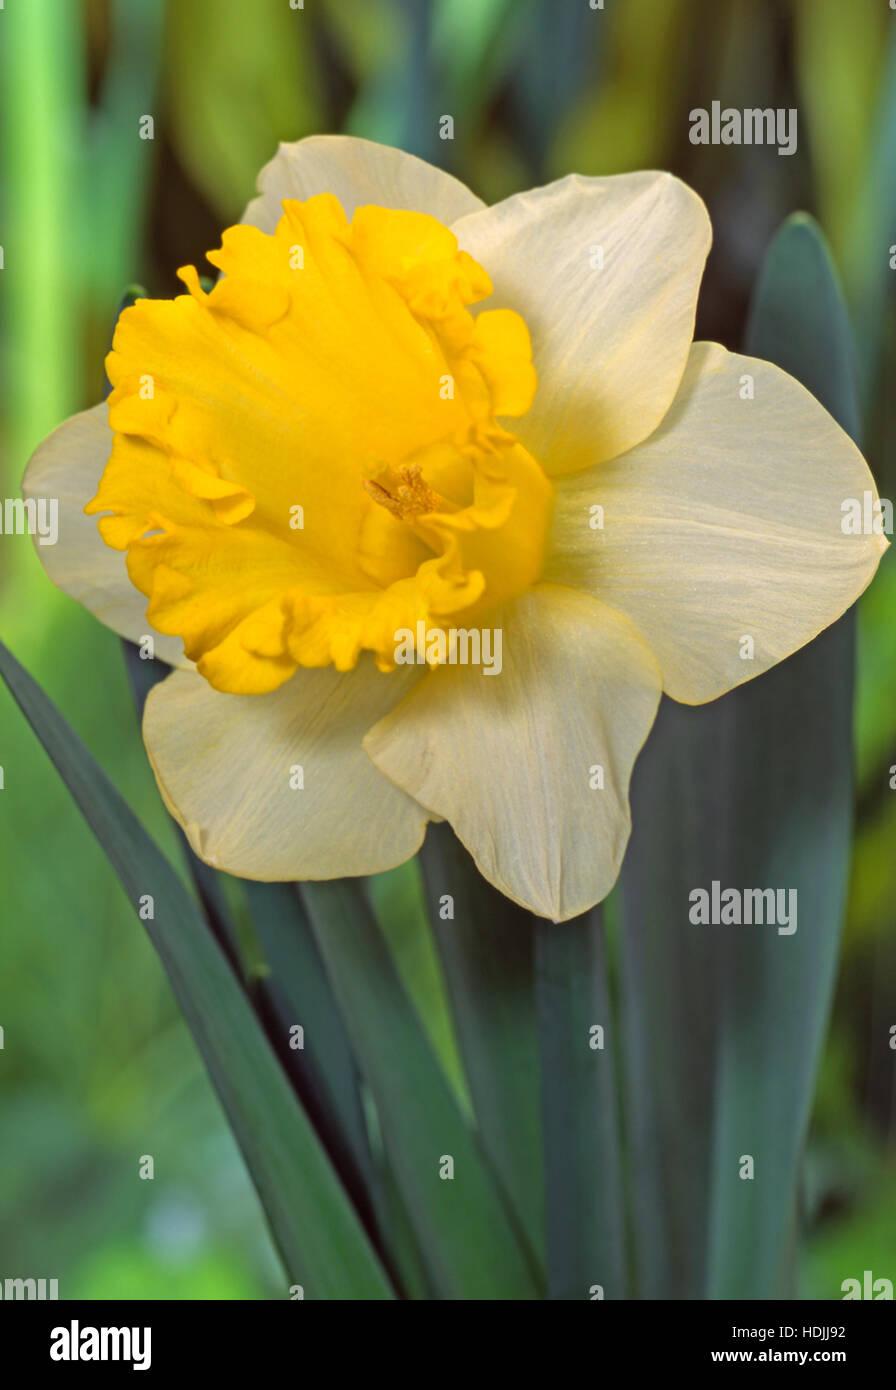 Narcissus ist eine Gattung von hauptsächlich winterhart, meist Frühjahr blühen, knolligen Stauden in der Amaryllis-Familie, Unterfamilie Amaryllidoideae. Stockfoto